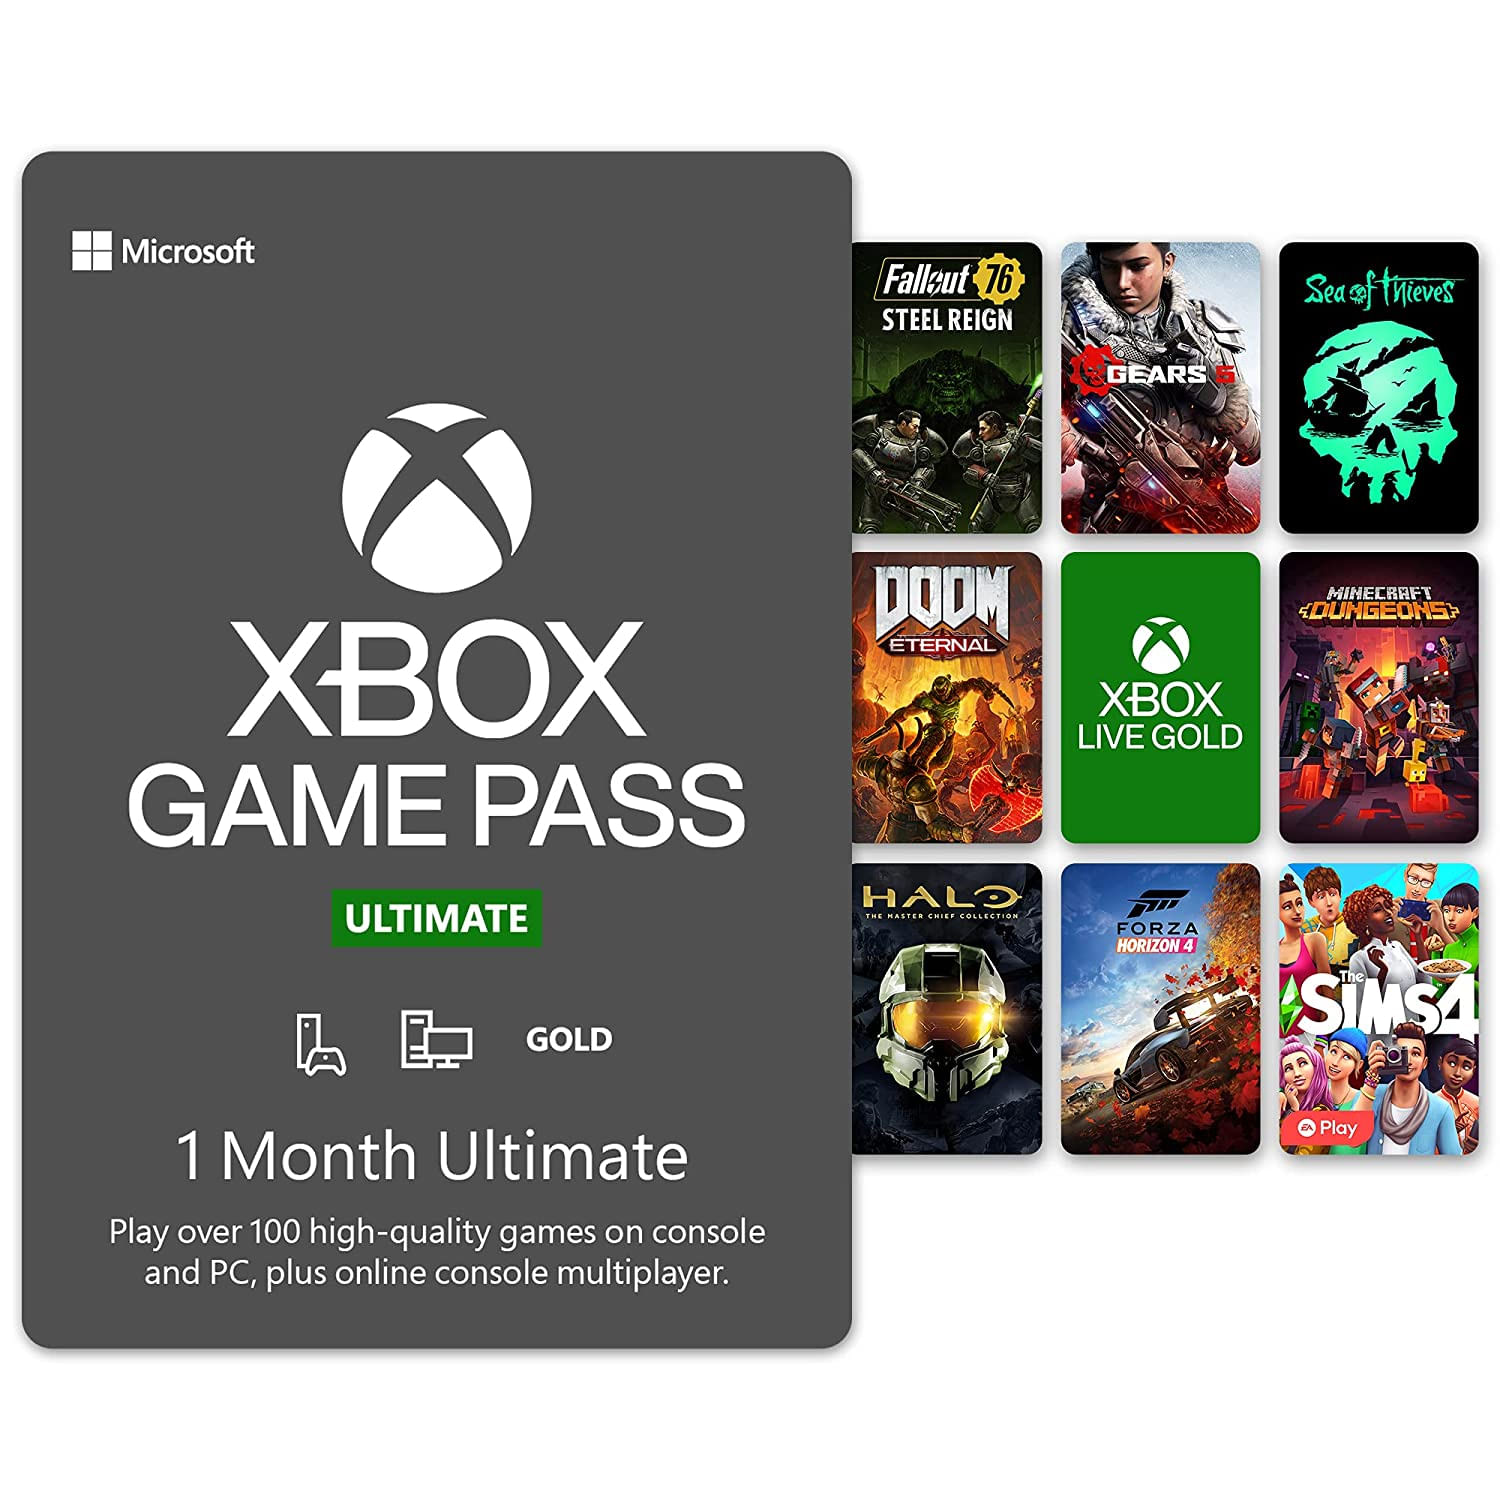 Xbox Game Pass Lidera no Mercado de Assinatura de Jogos.